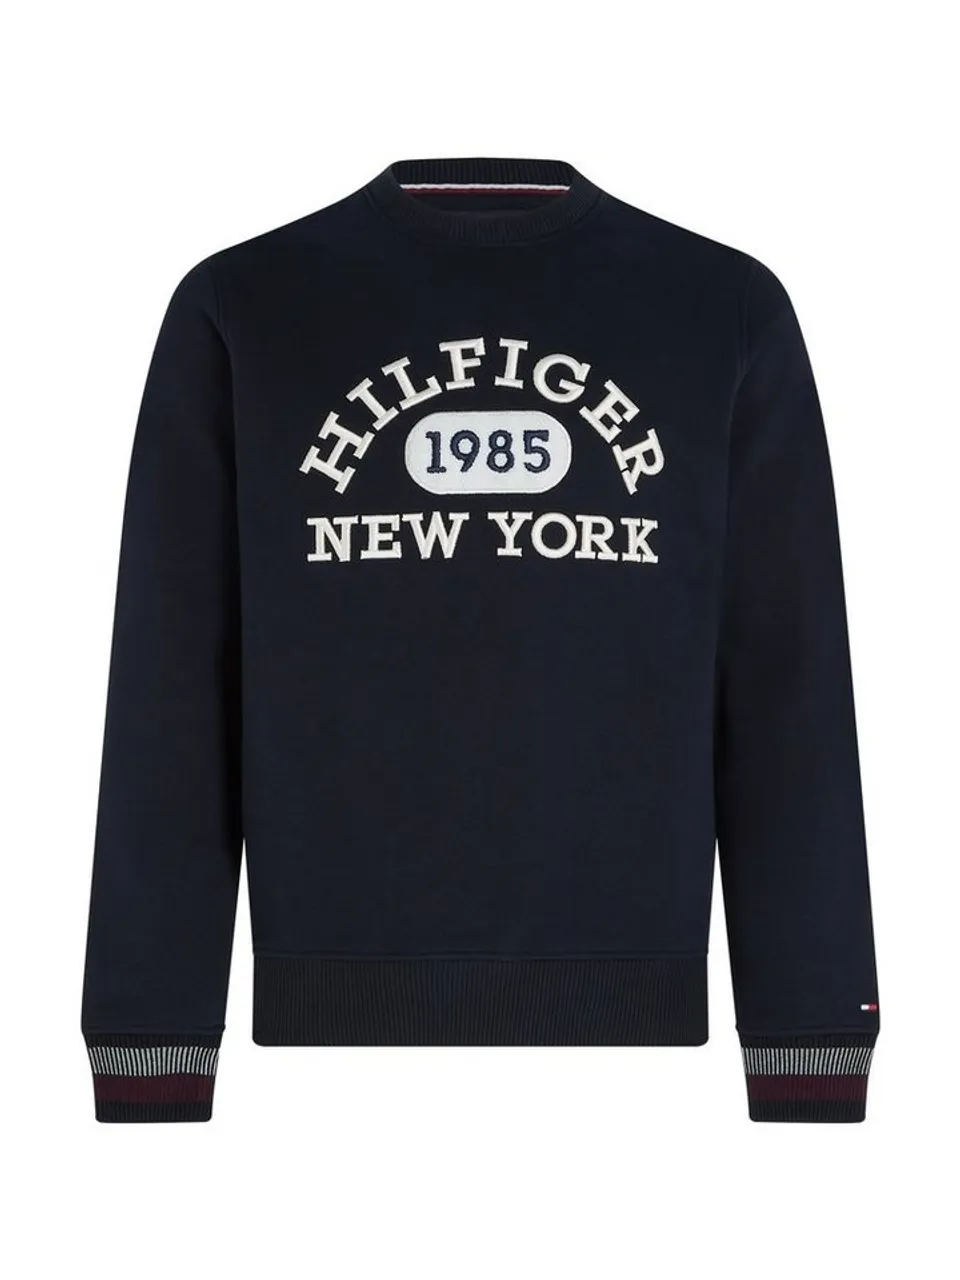 Tommy Hilfiger Sweatshirt Hilfiger 1985 New York